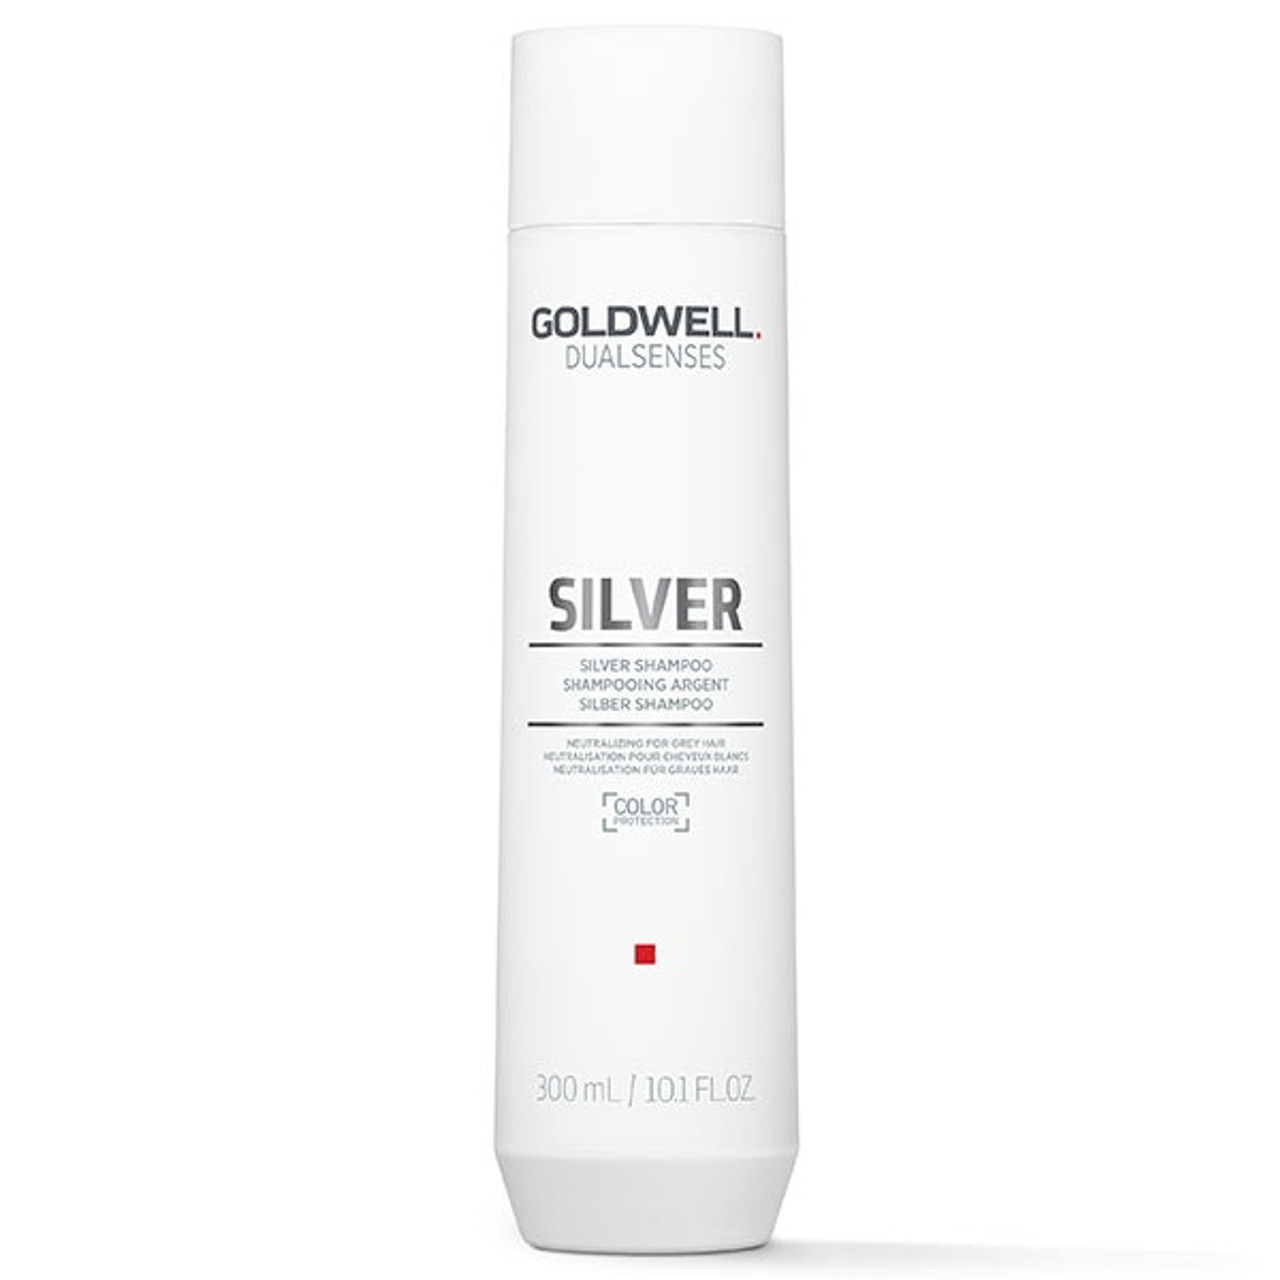 Goldwell Dualsenses Silver Shampoo - Vivo Hair Salon and Skin Clinic